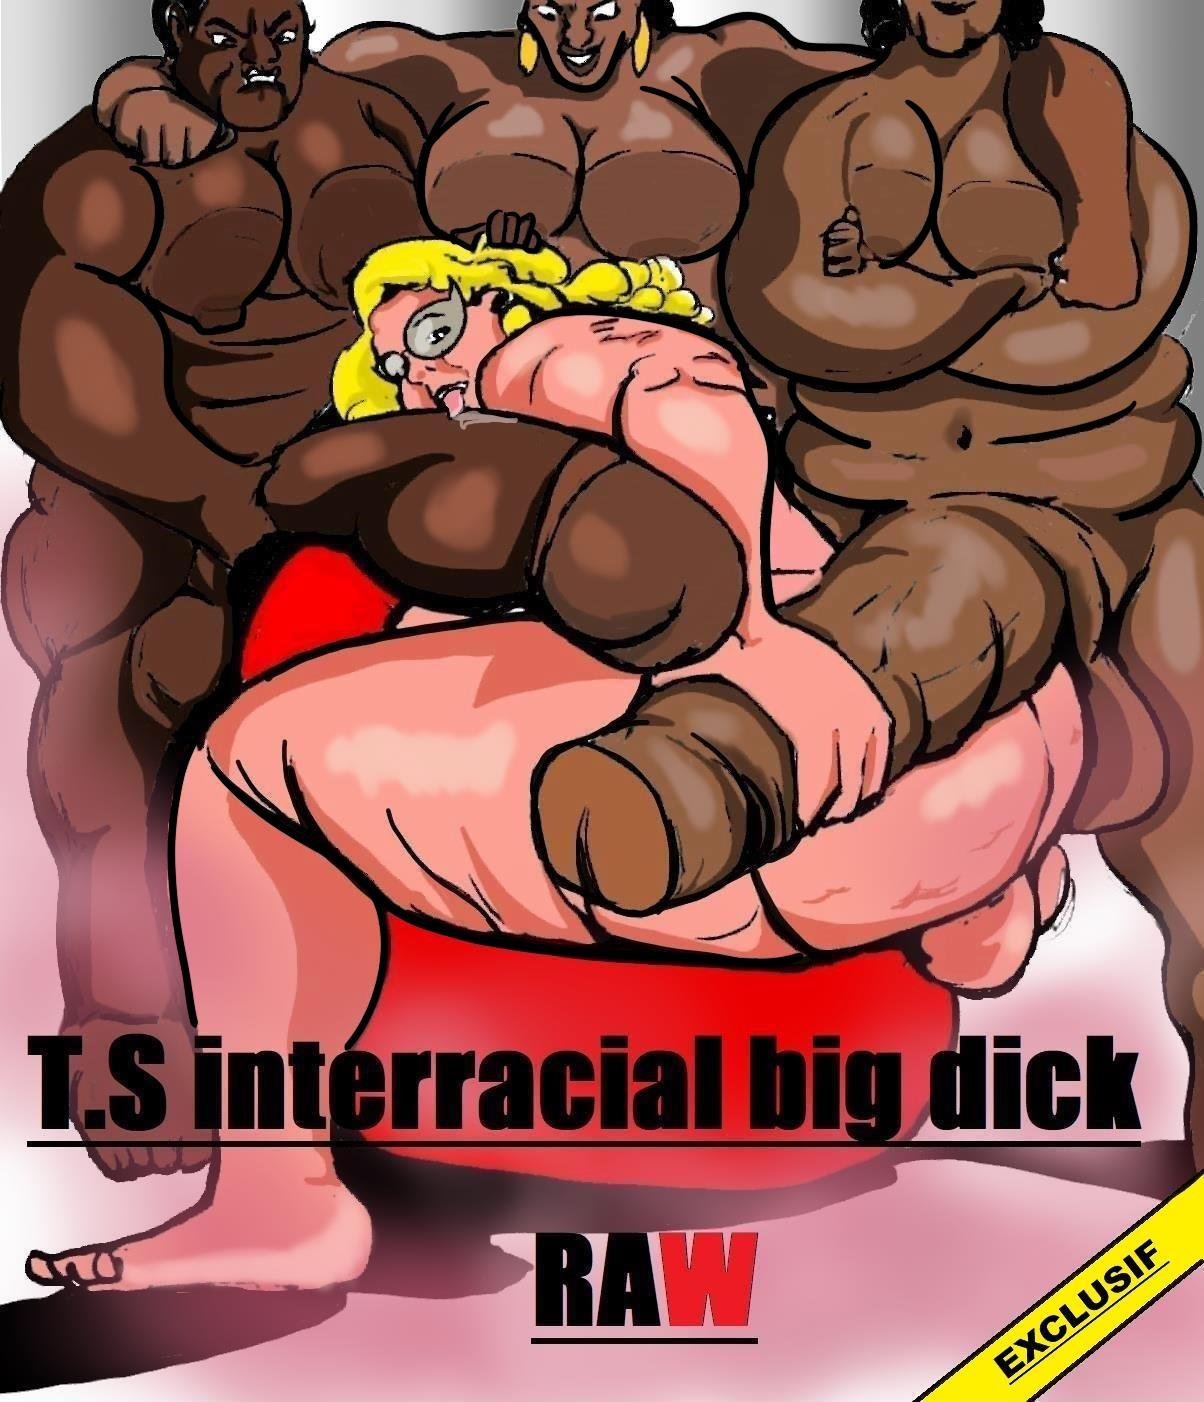 Big Cock Interracial Cartoon - T.S Interracial big dick RAW Â» Porn comics free online